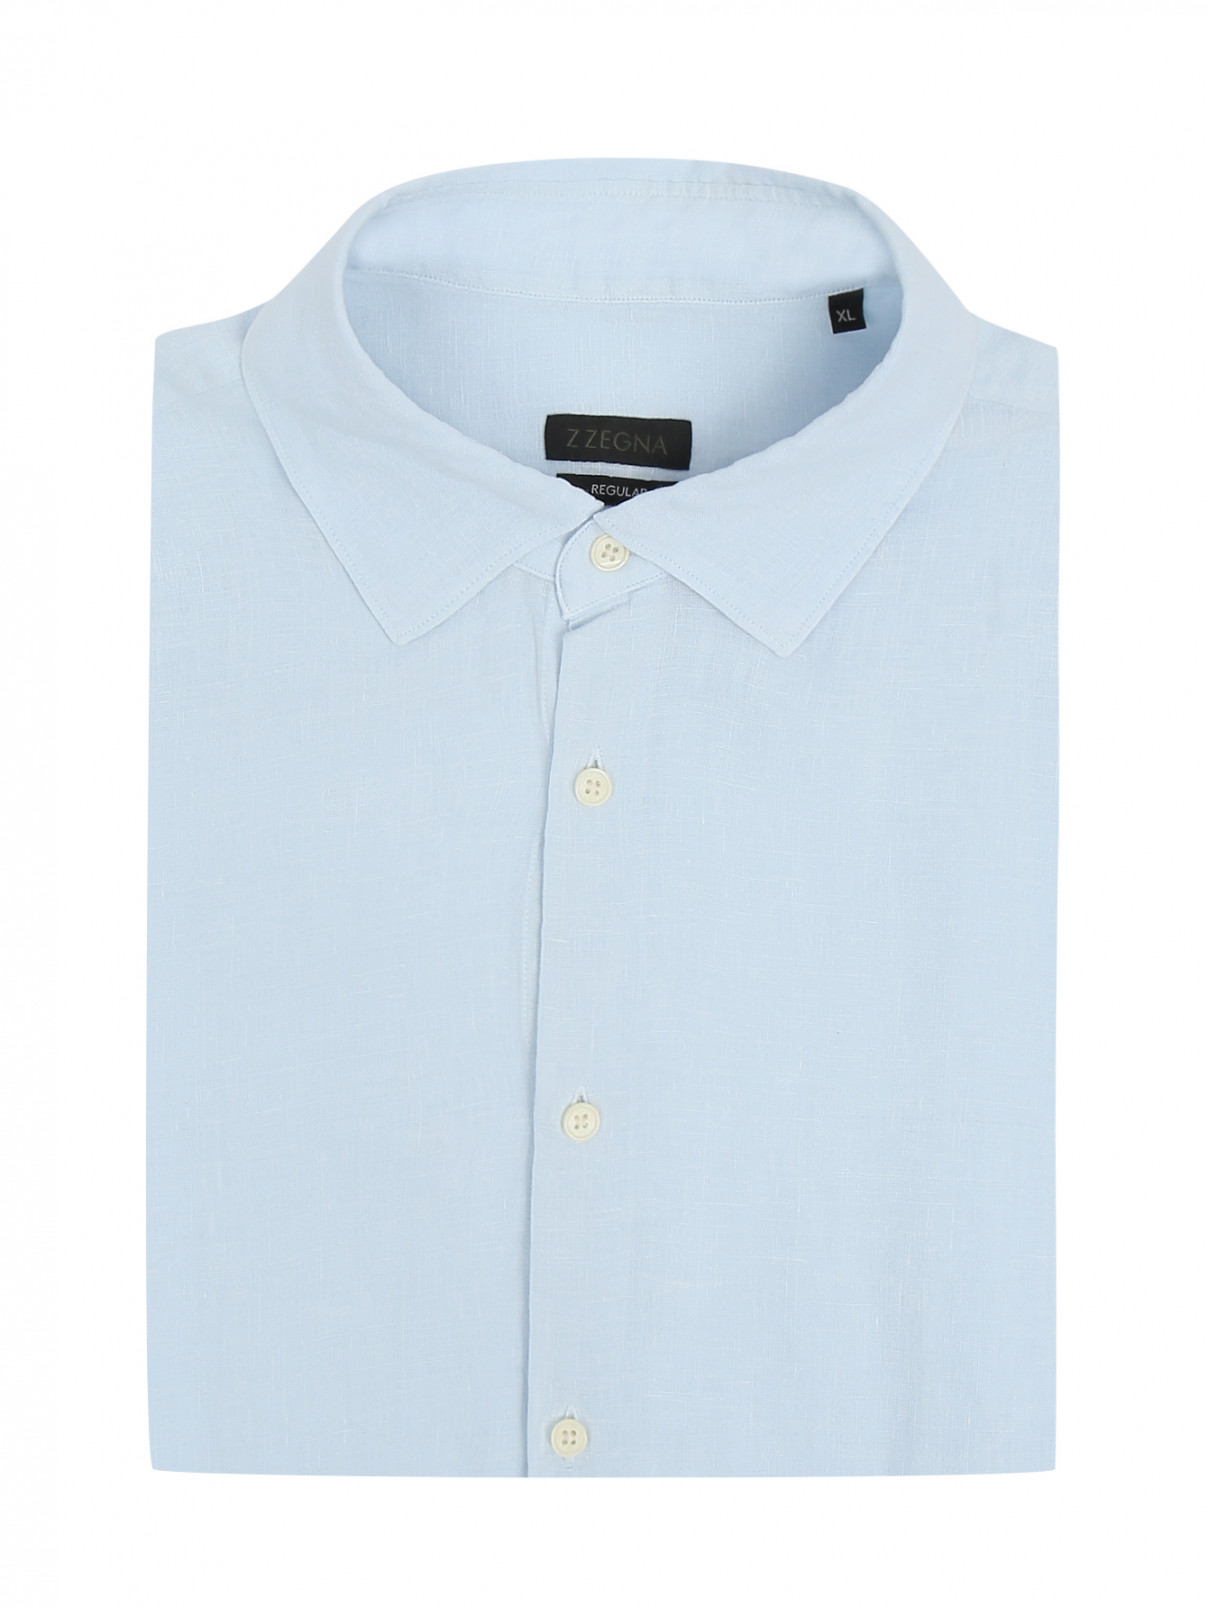 Рубашка из льна с коротким рукавом Ermenegildo Zegna  –  Общий вид  – Цвет:  Синий